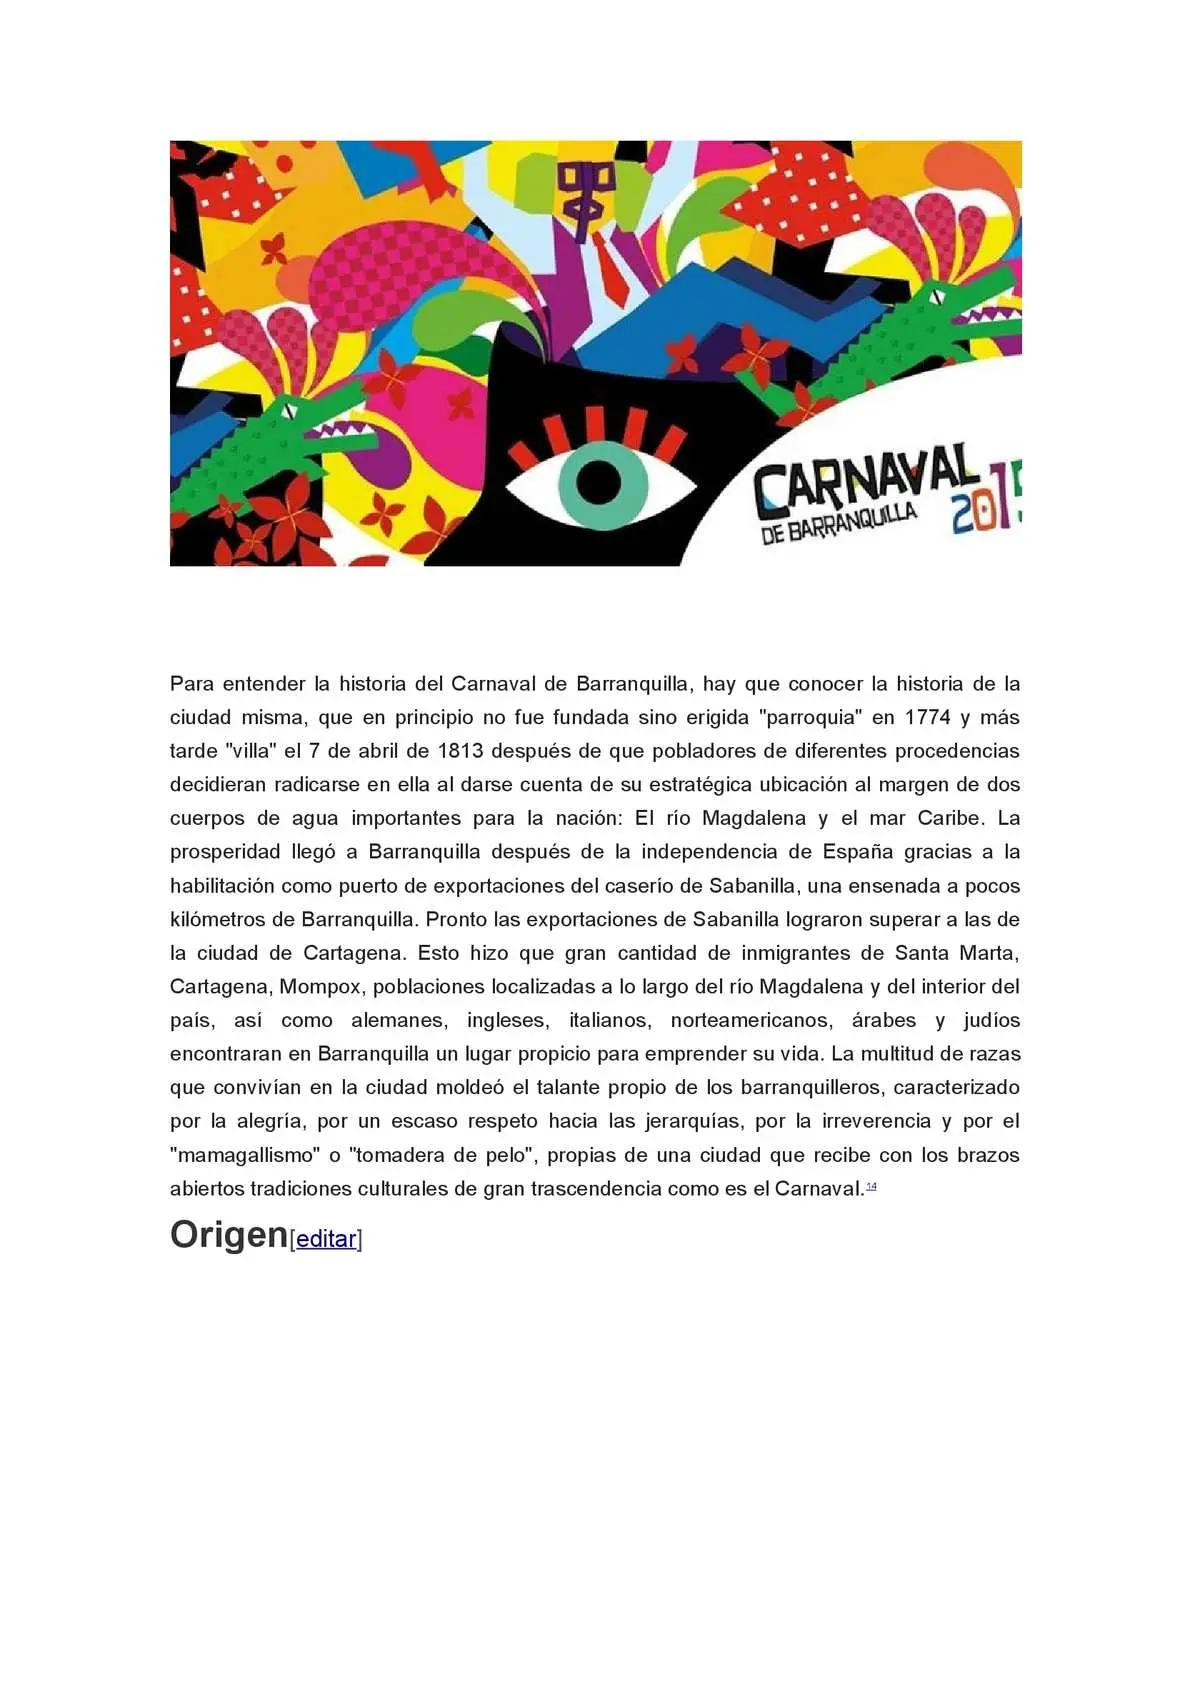 historia del carnaval resumen - Qué significa el carnaval en Argentina